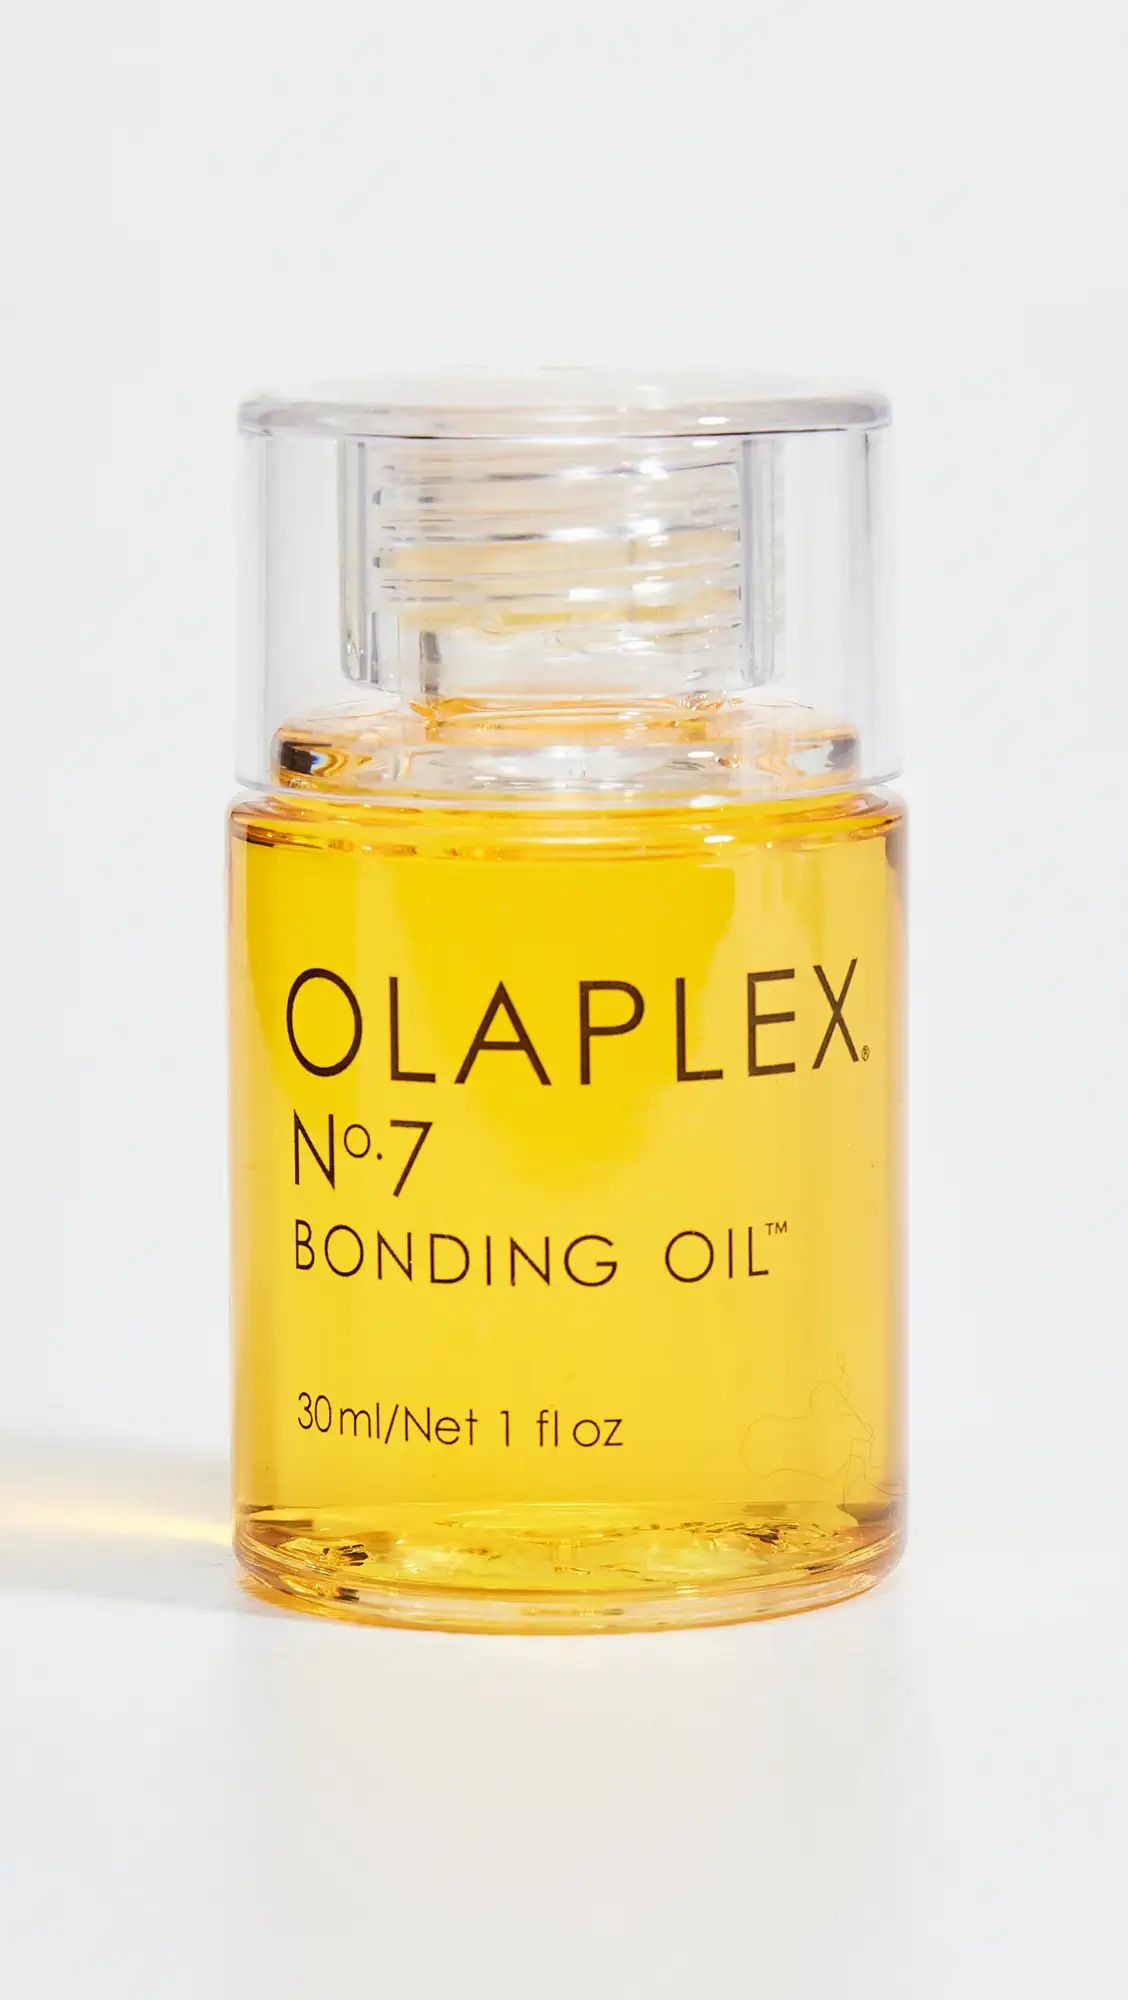 OLAPLEX No.7 Bonding Oil | Shopbop | Shopbop